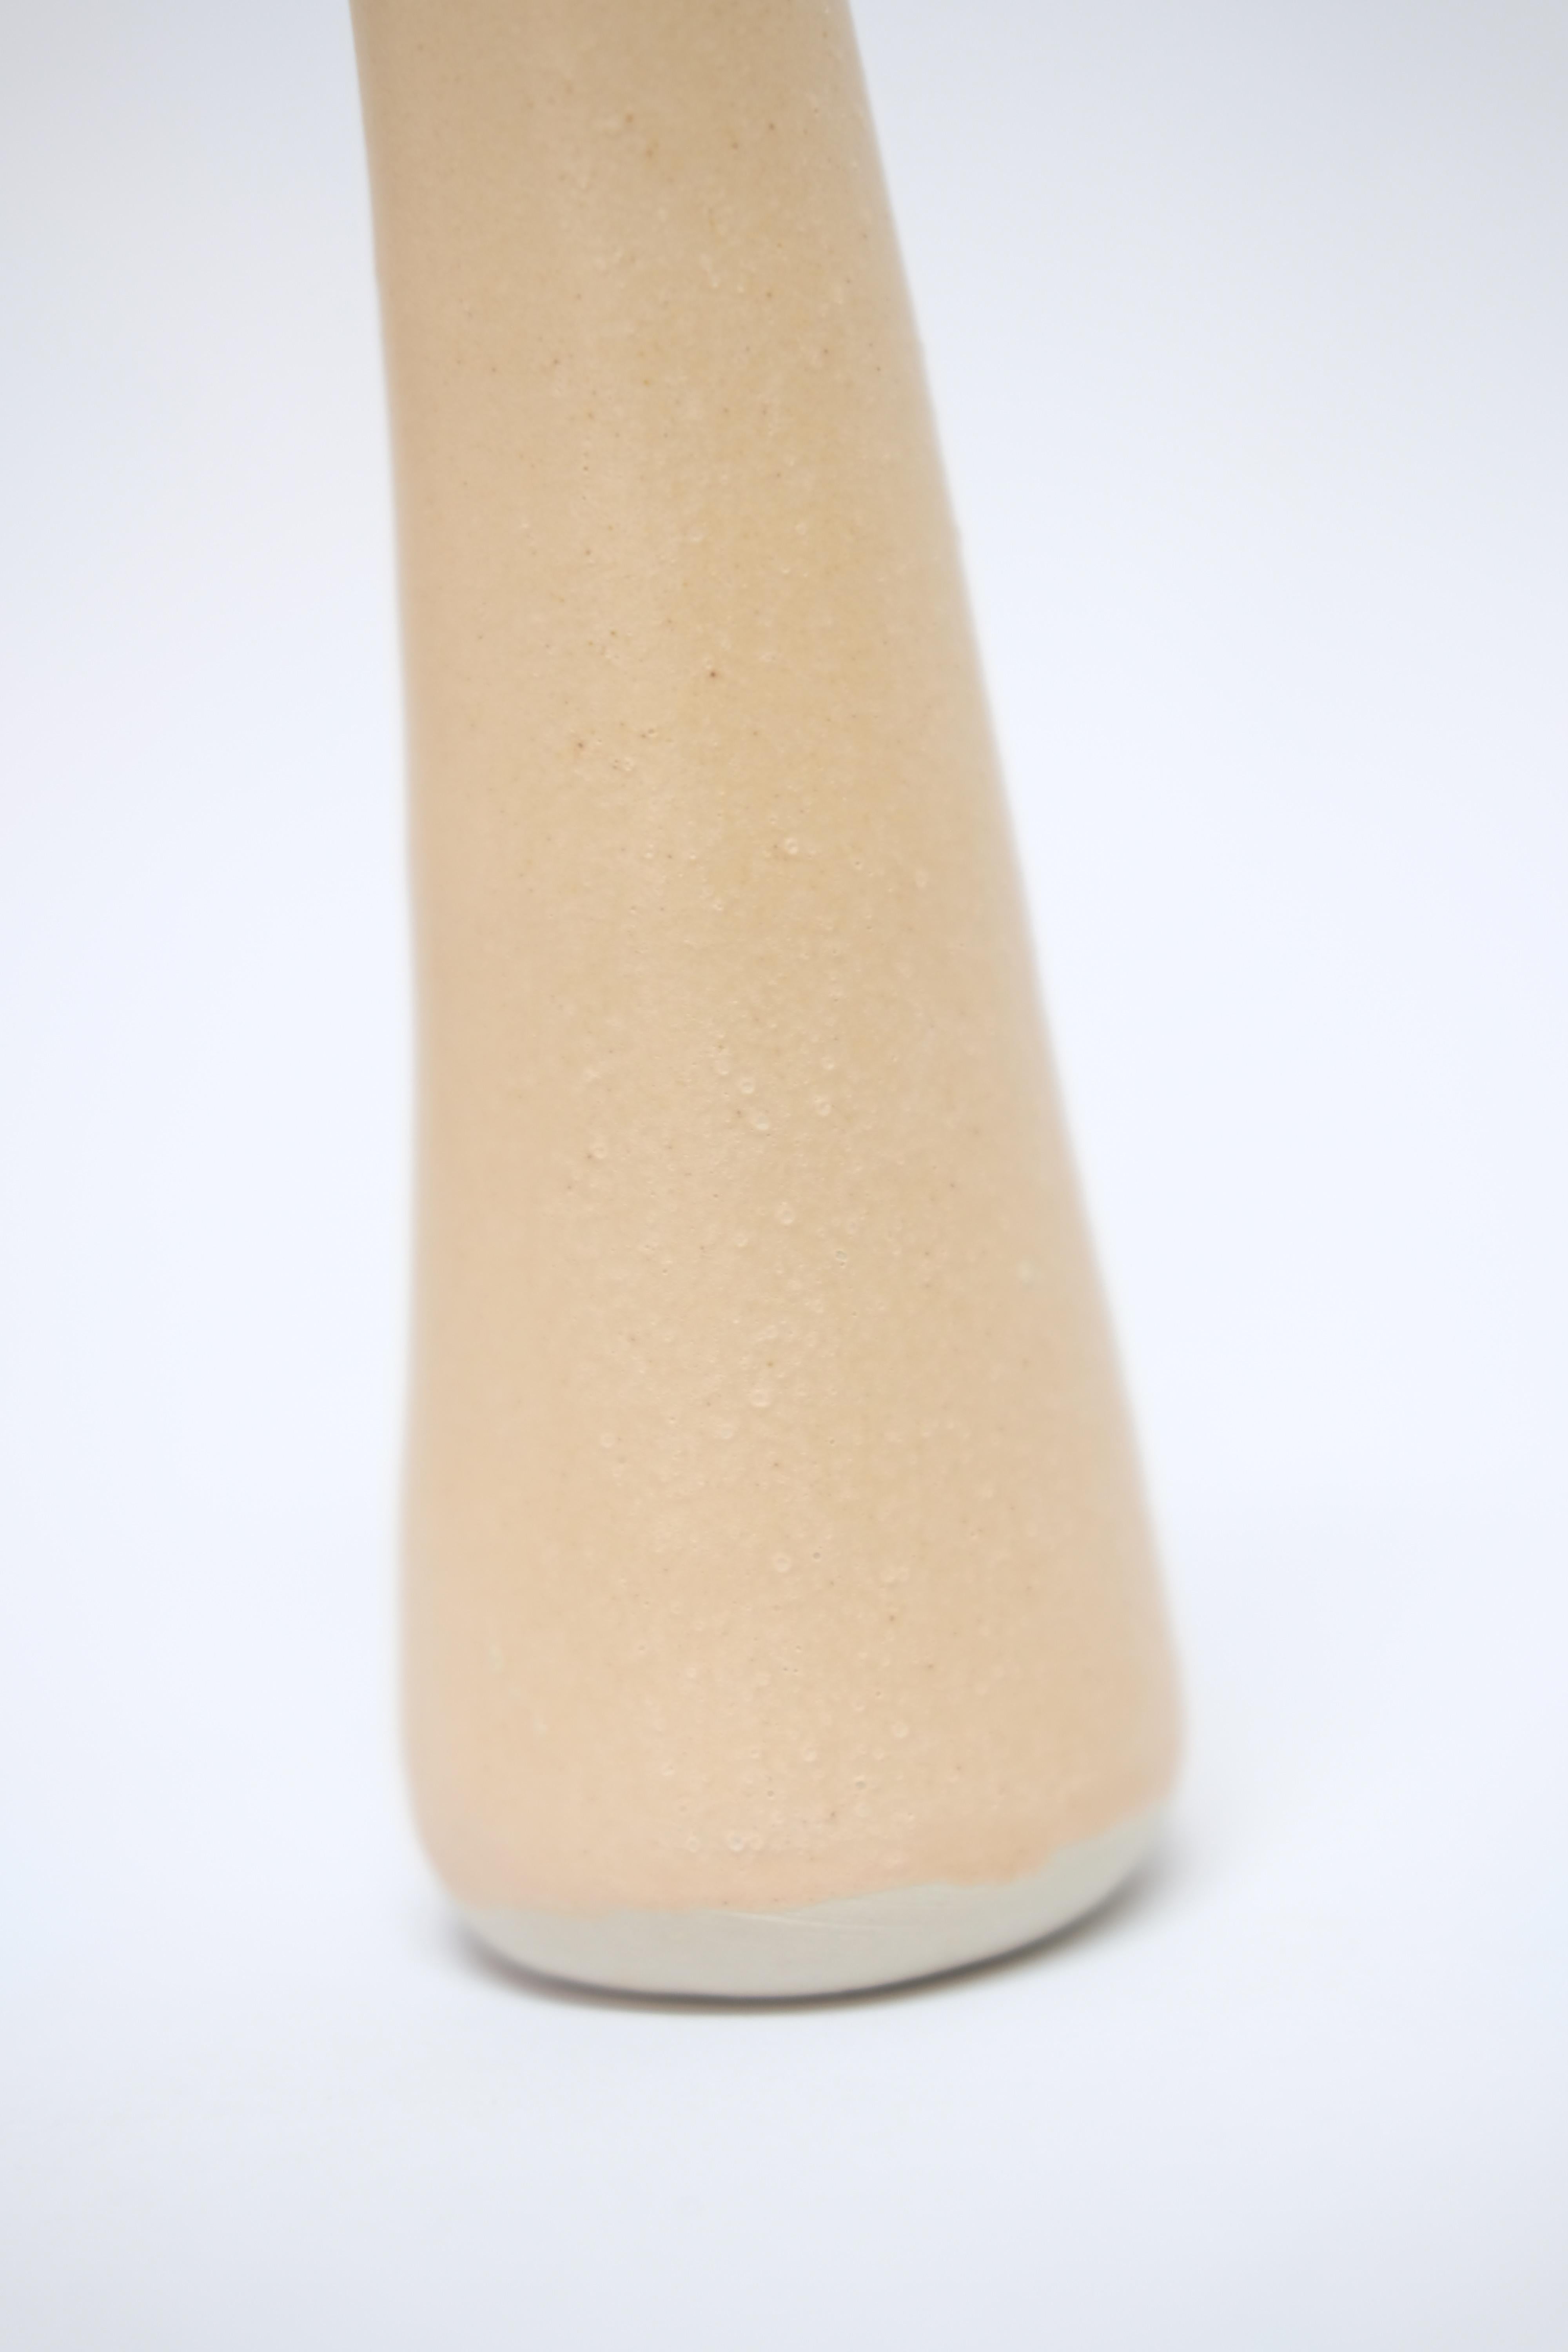 Contemporary Solitario Stoneware Vase by Camila Apaez